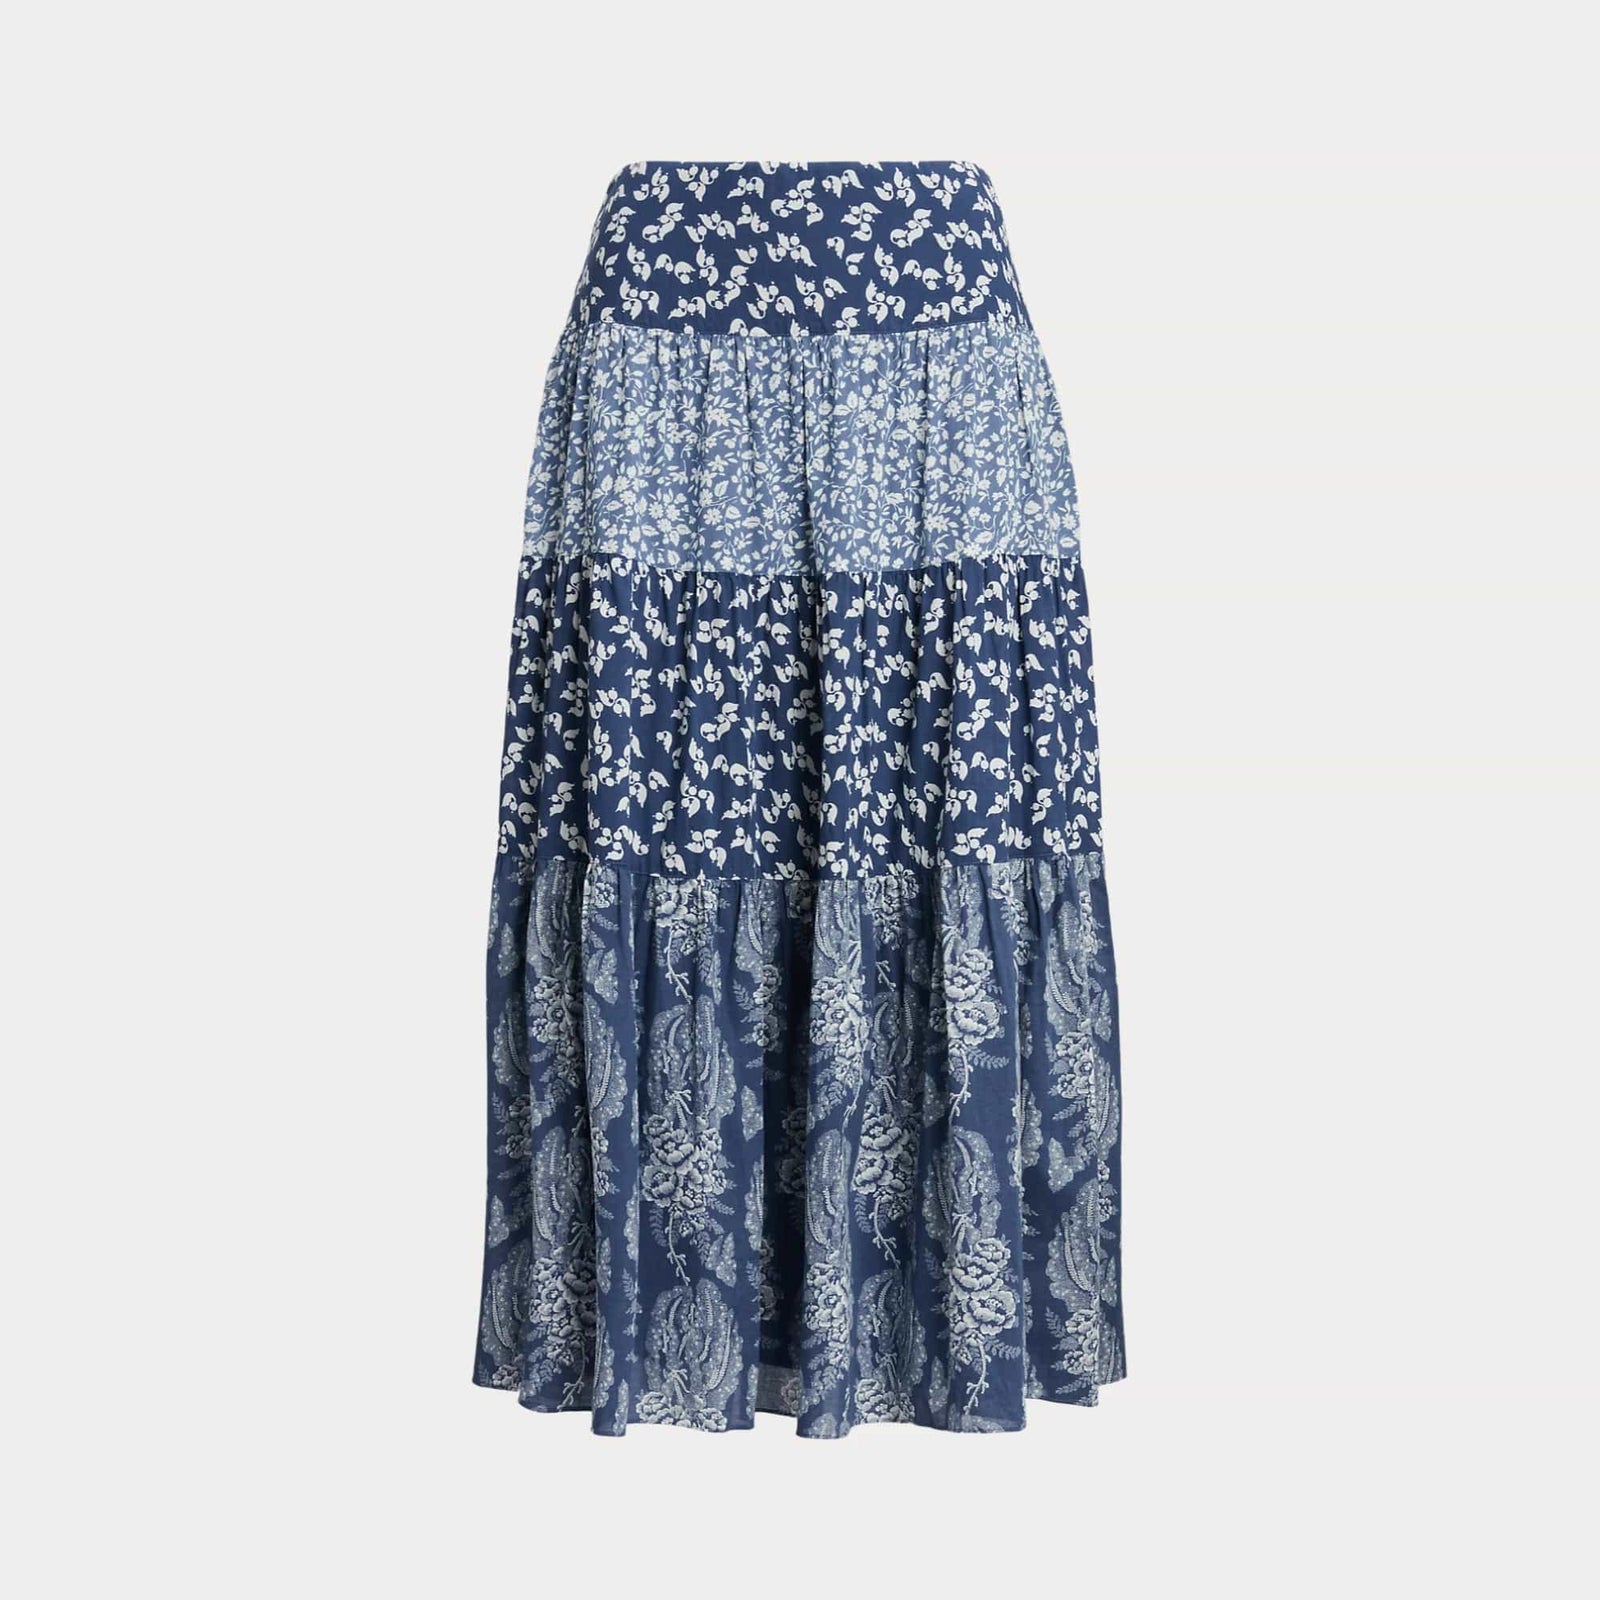 Lauren Ralph Lauren Patchwork Floral Voile Tiered Skirt in Blue/Cream